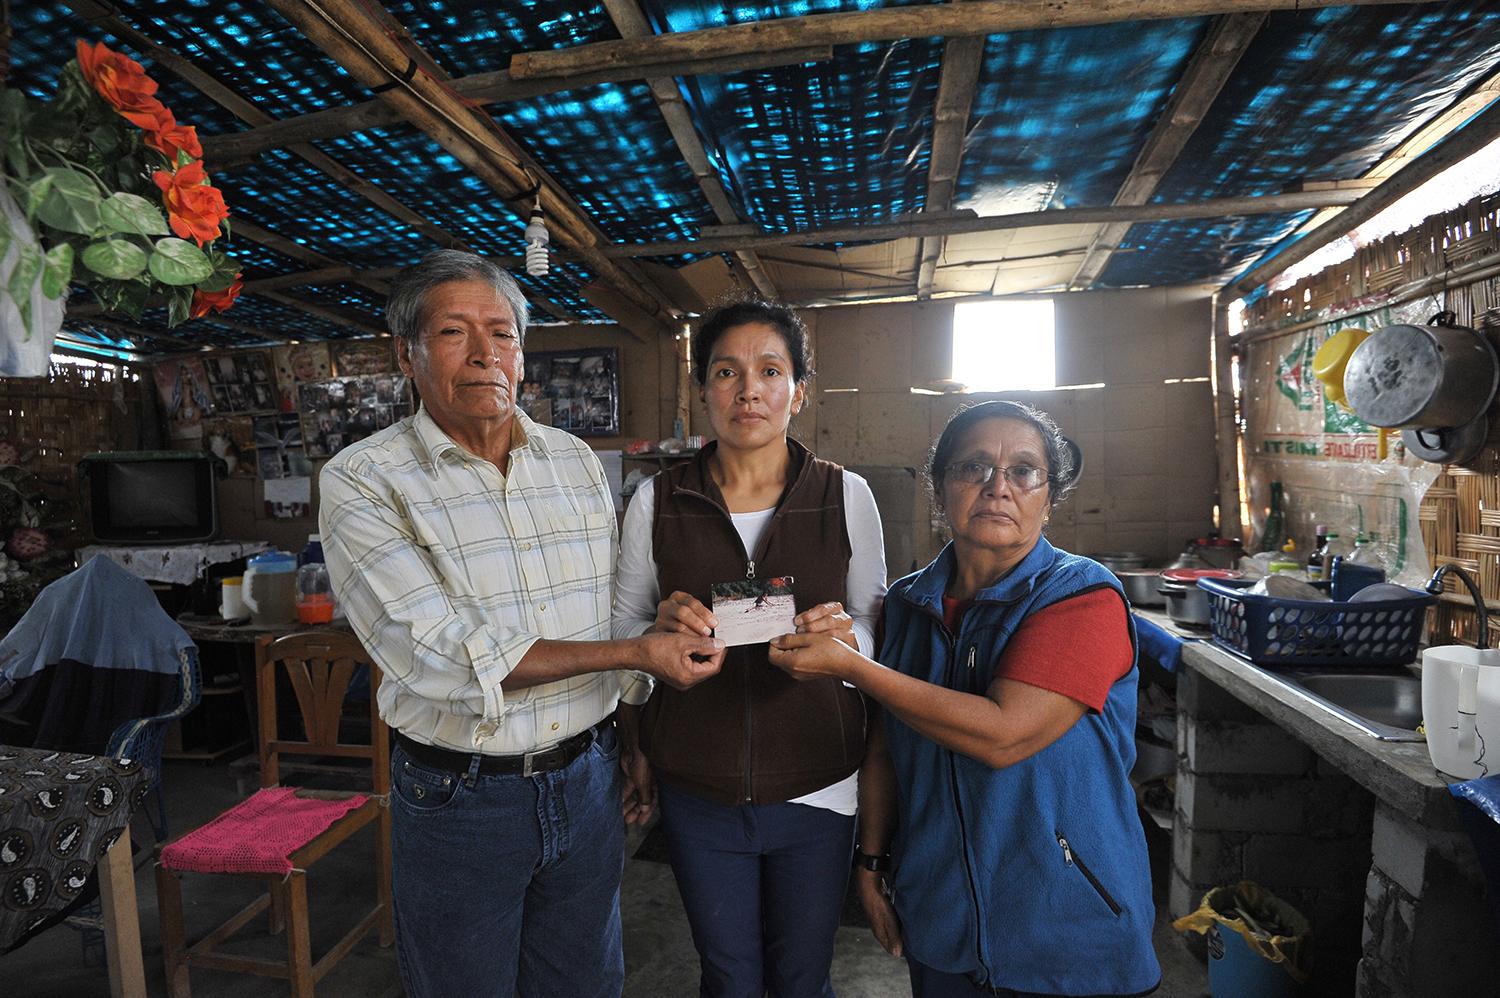 Antenor Hoyos Cubas et sa femme María Concepción Sagastegui Tapia, photographiés avec leur fille dans leur maison dans la banlieue de Lima (Pérou) en mai 2017, tiennent une photo de leur fils Nestor, 25 ans après sa « disparition forcée » aux mains de sol